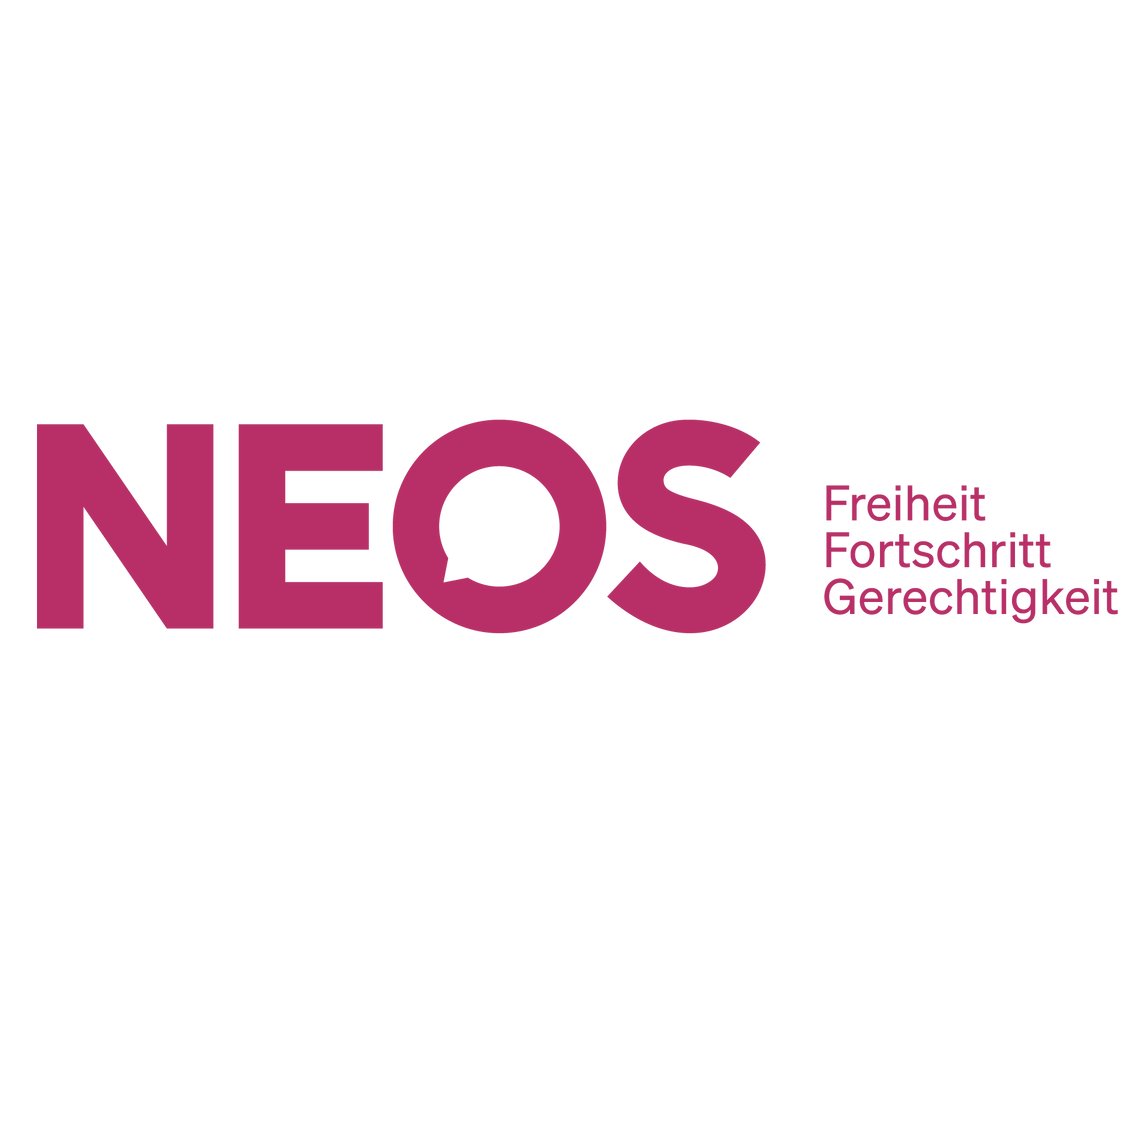 NEOS - Das Neue Österreich und Liberales Forum